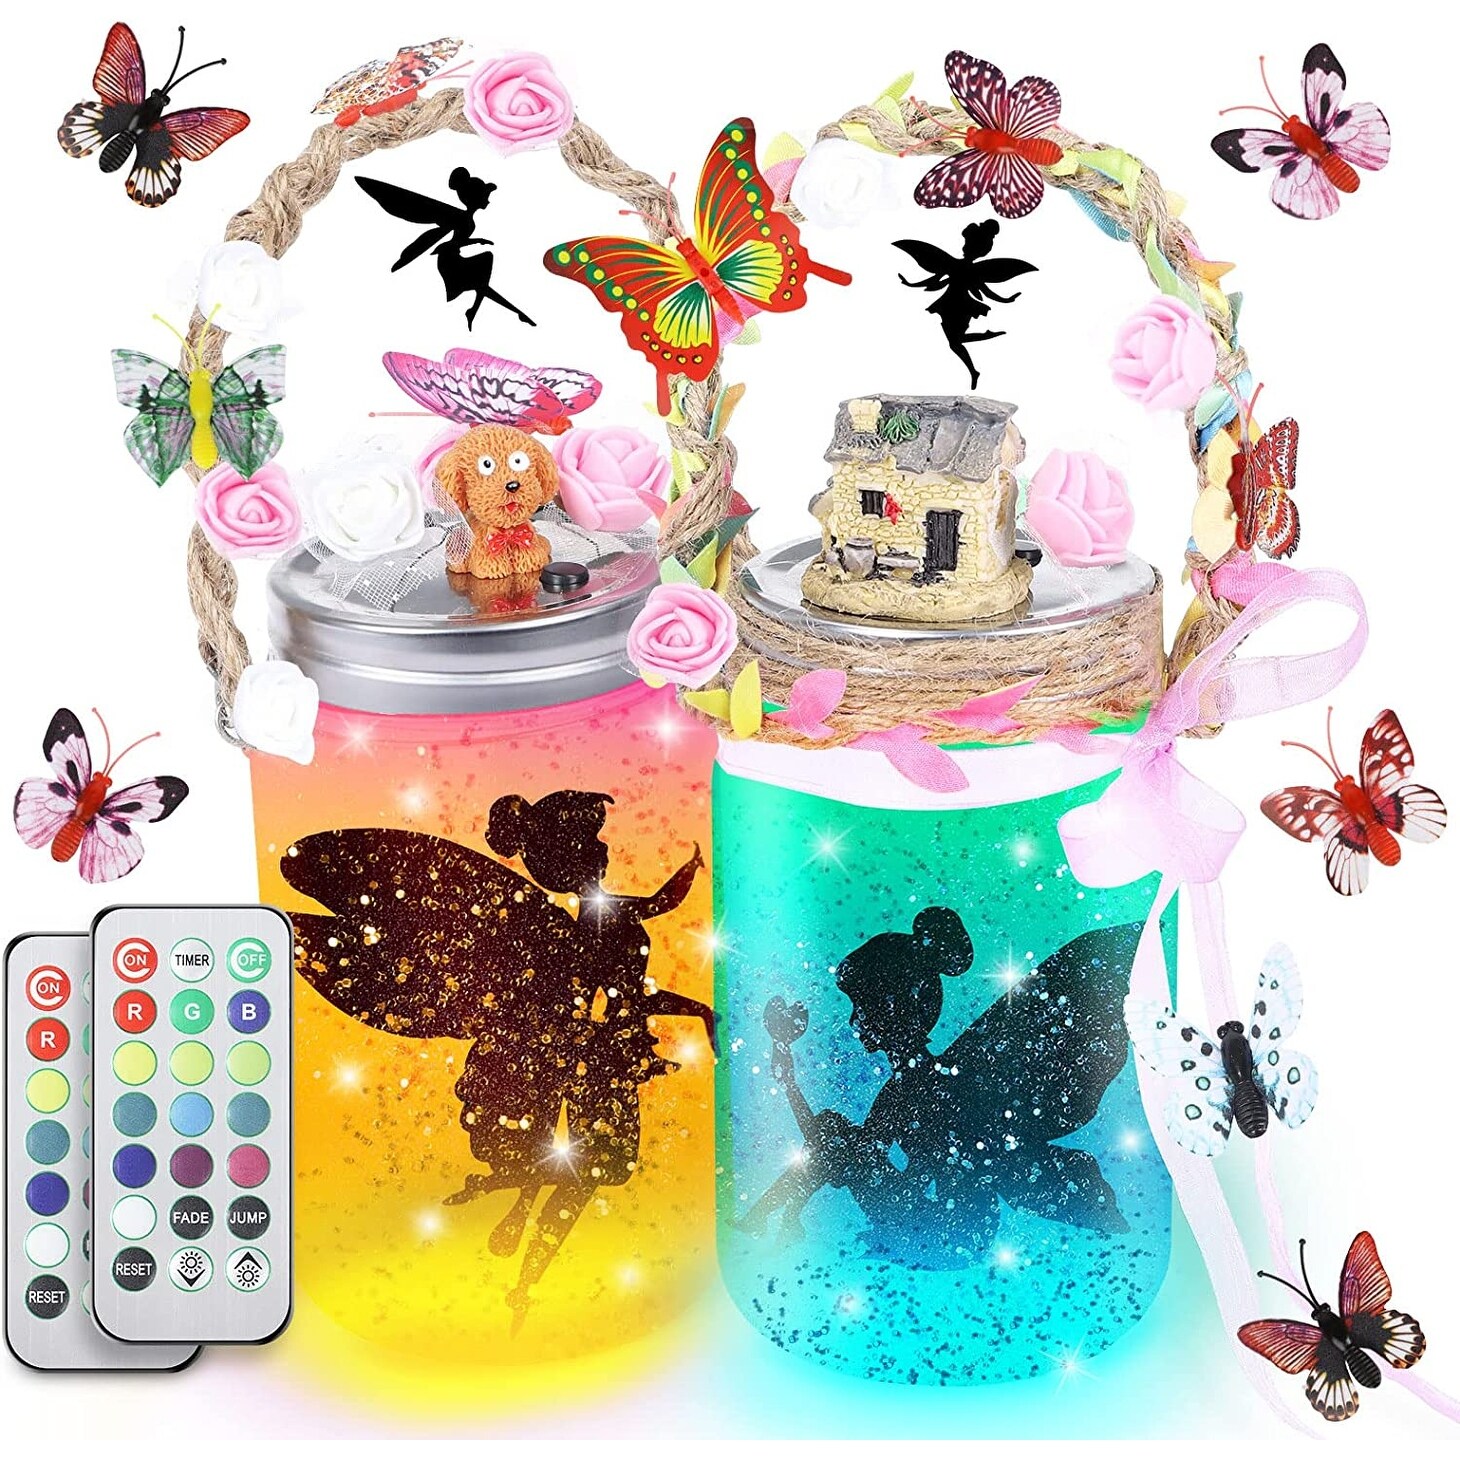 Fairy Lantern Craft Kit